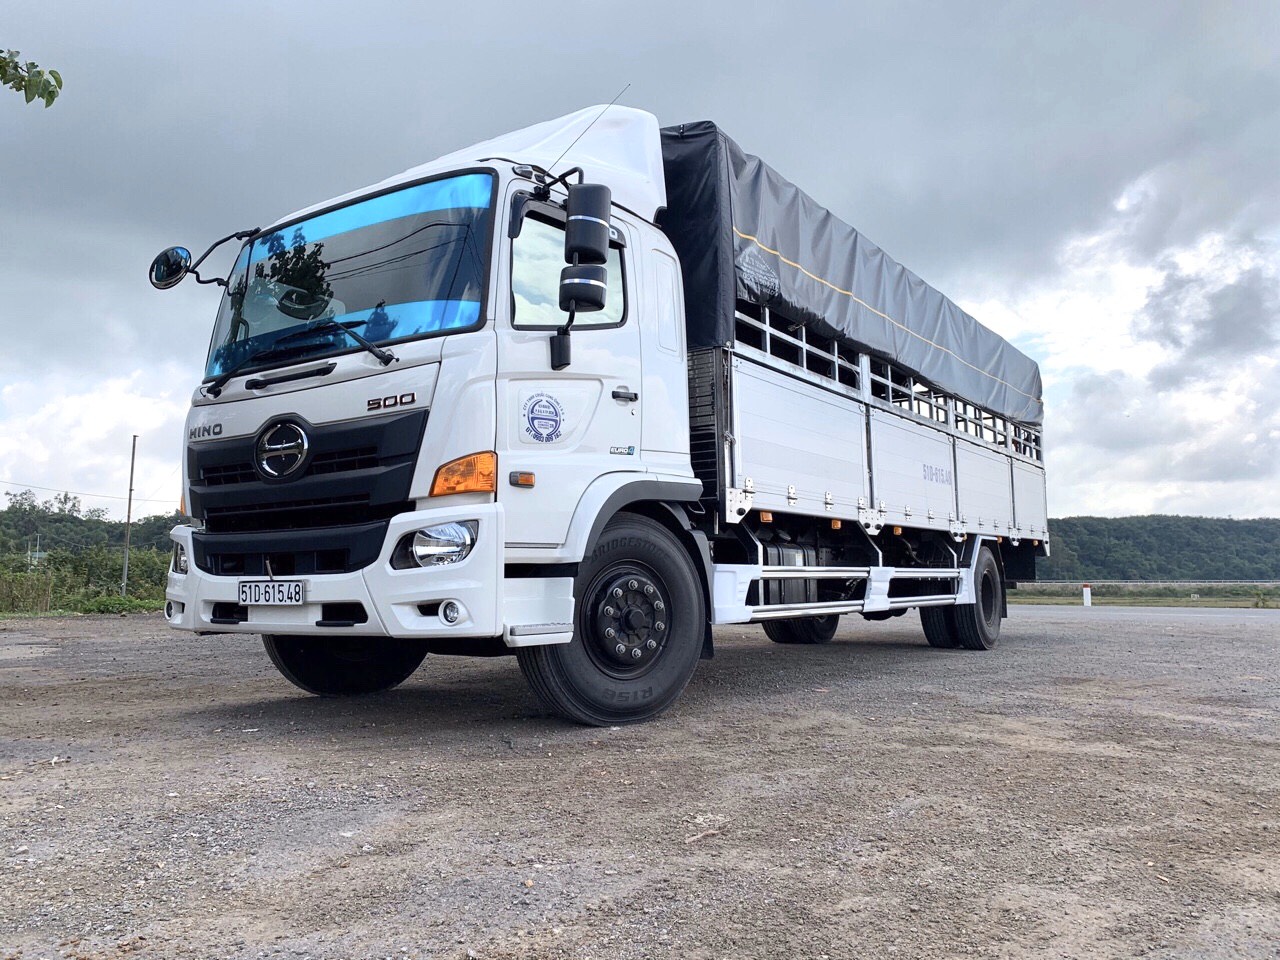 Xe tải Hino 8 tấn là chiếc xe tải được nhiều doanh nghiệp tin dùng nhất hiện nay. Với thiết kế hiện đại, xe tải Hino 8 tấn sẽ giúp bạn vận chuyển hàng hóa một cách nhanh chóng và tiện lợi nhất.